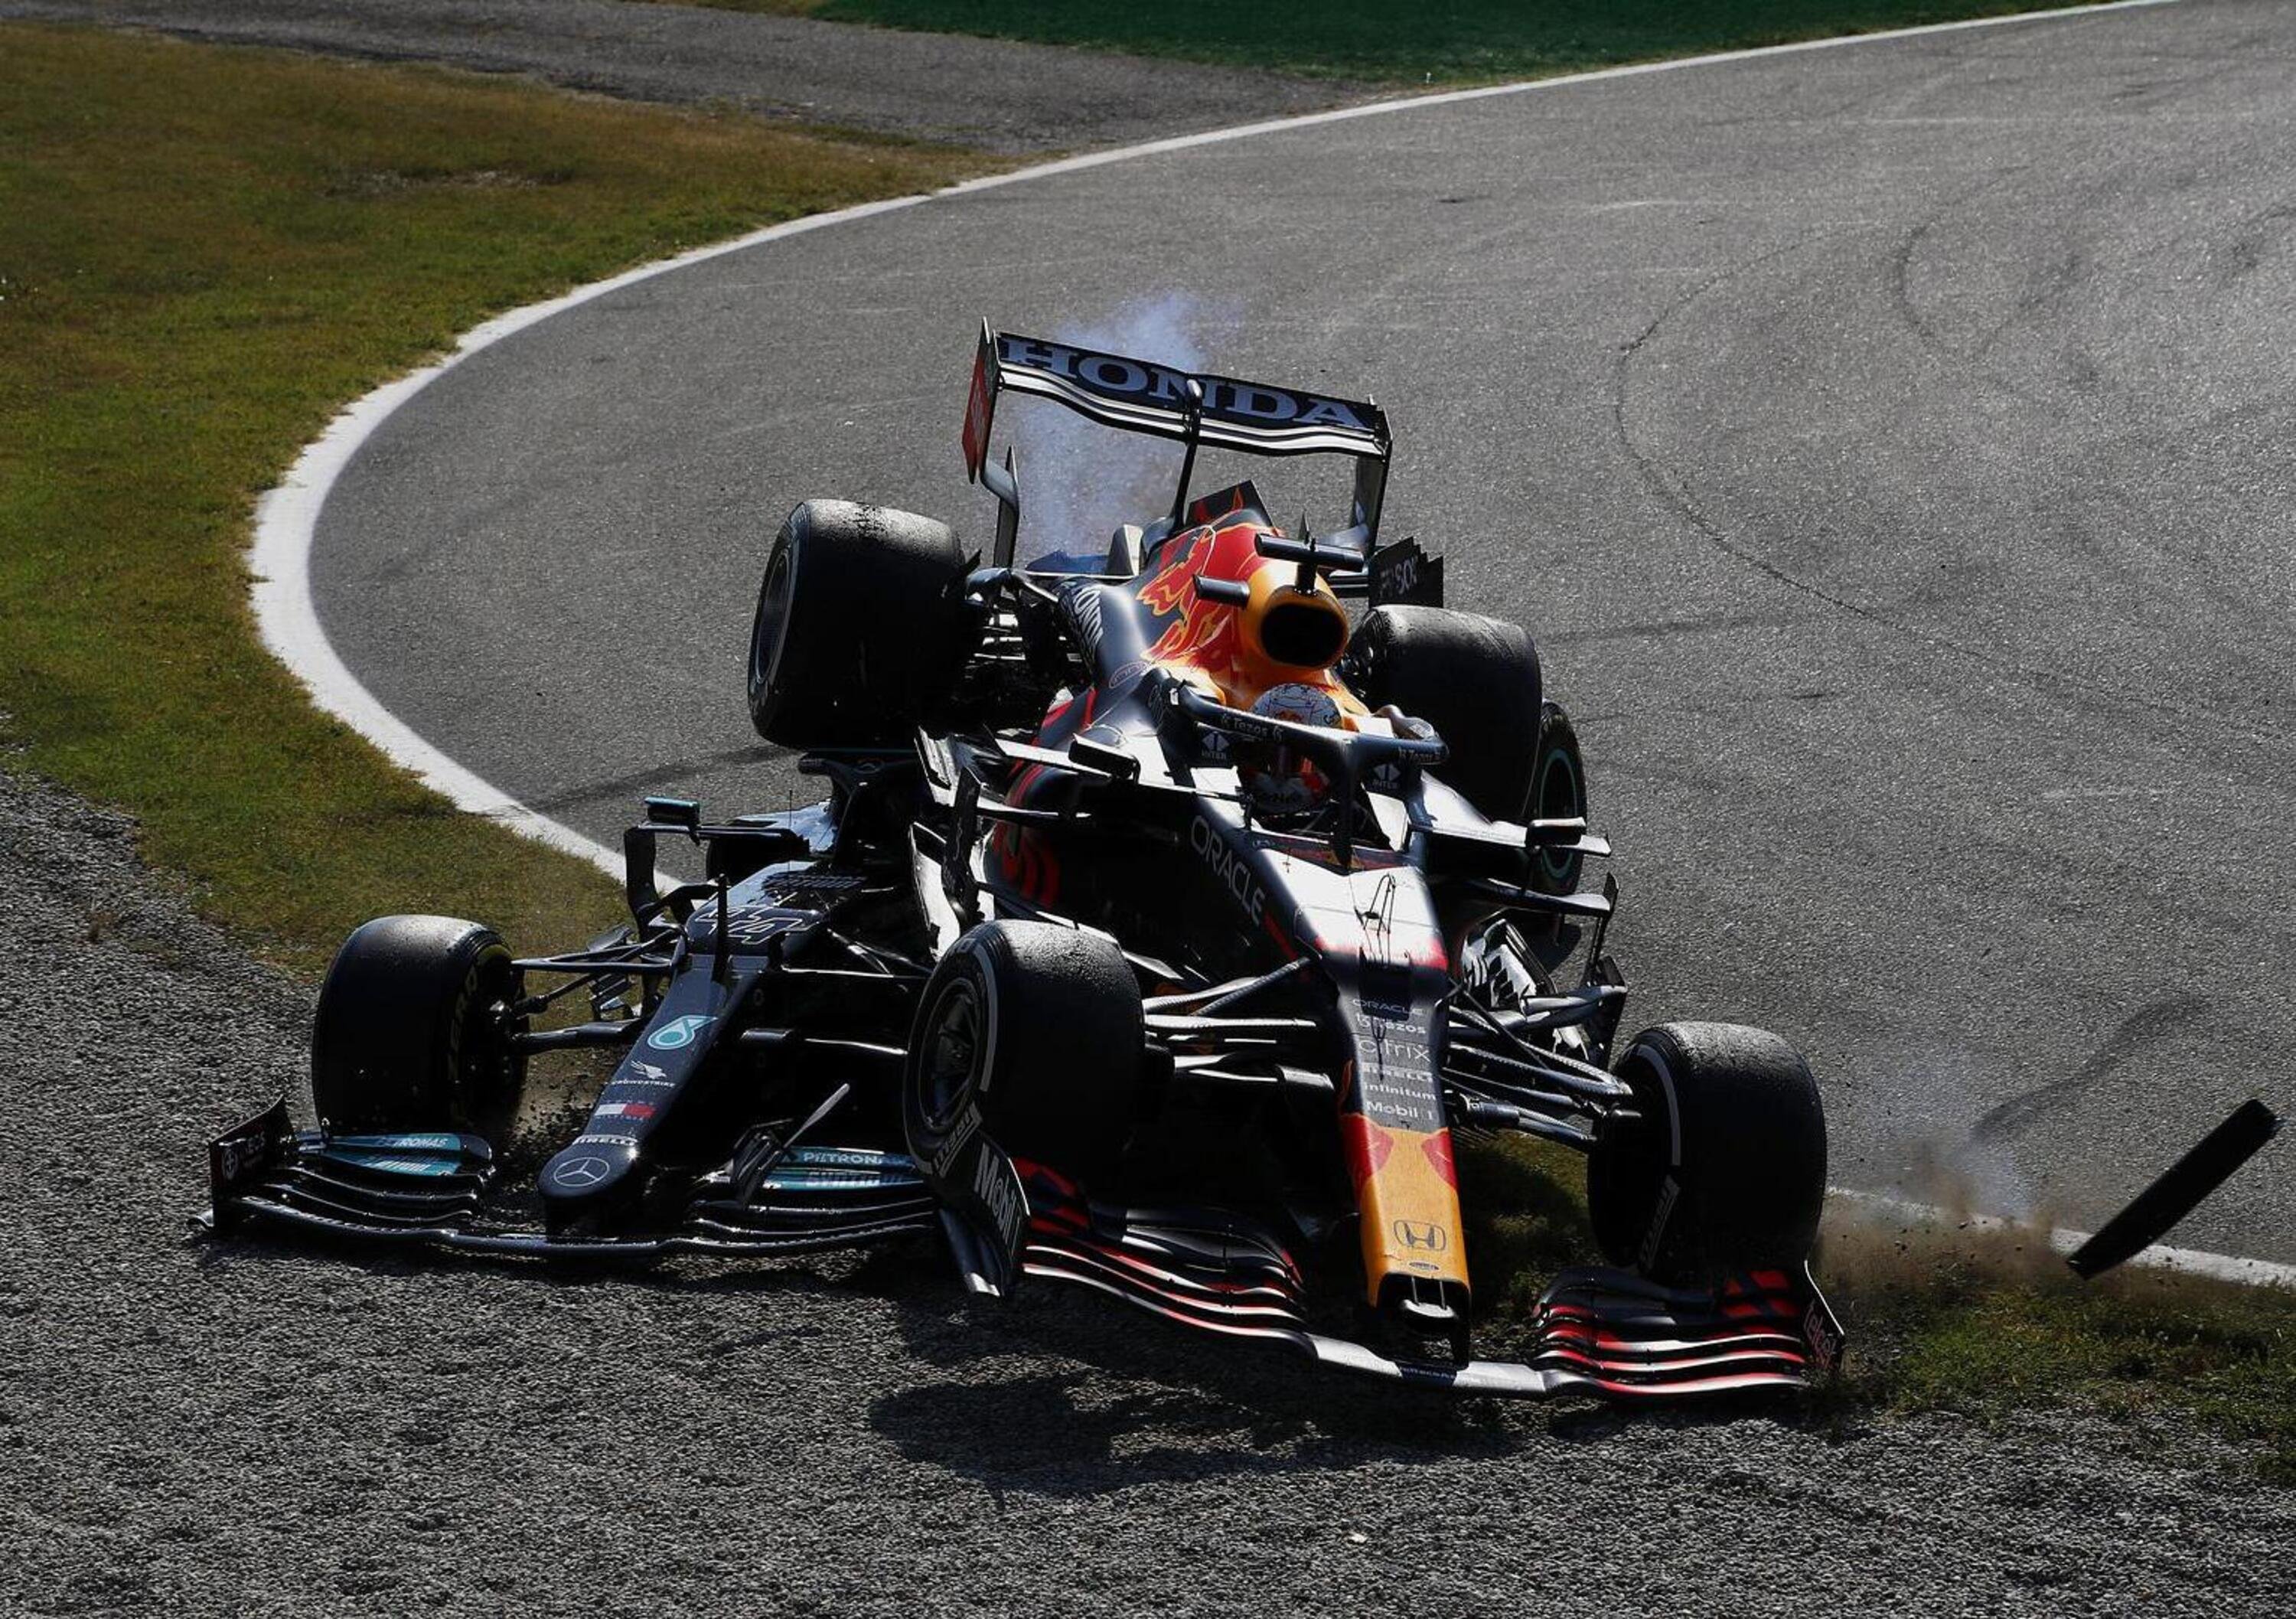 F1: Hamilton-Verstappen, gli schianti di Silverstone e Monza sono due facce della stessa medaglia